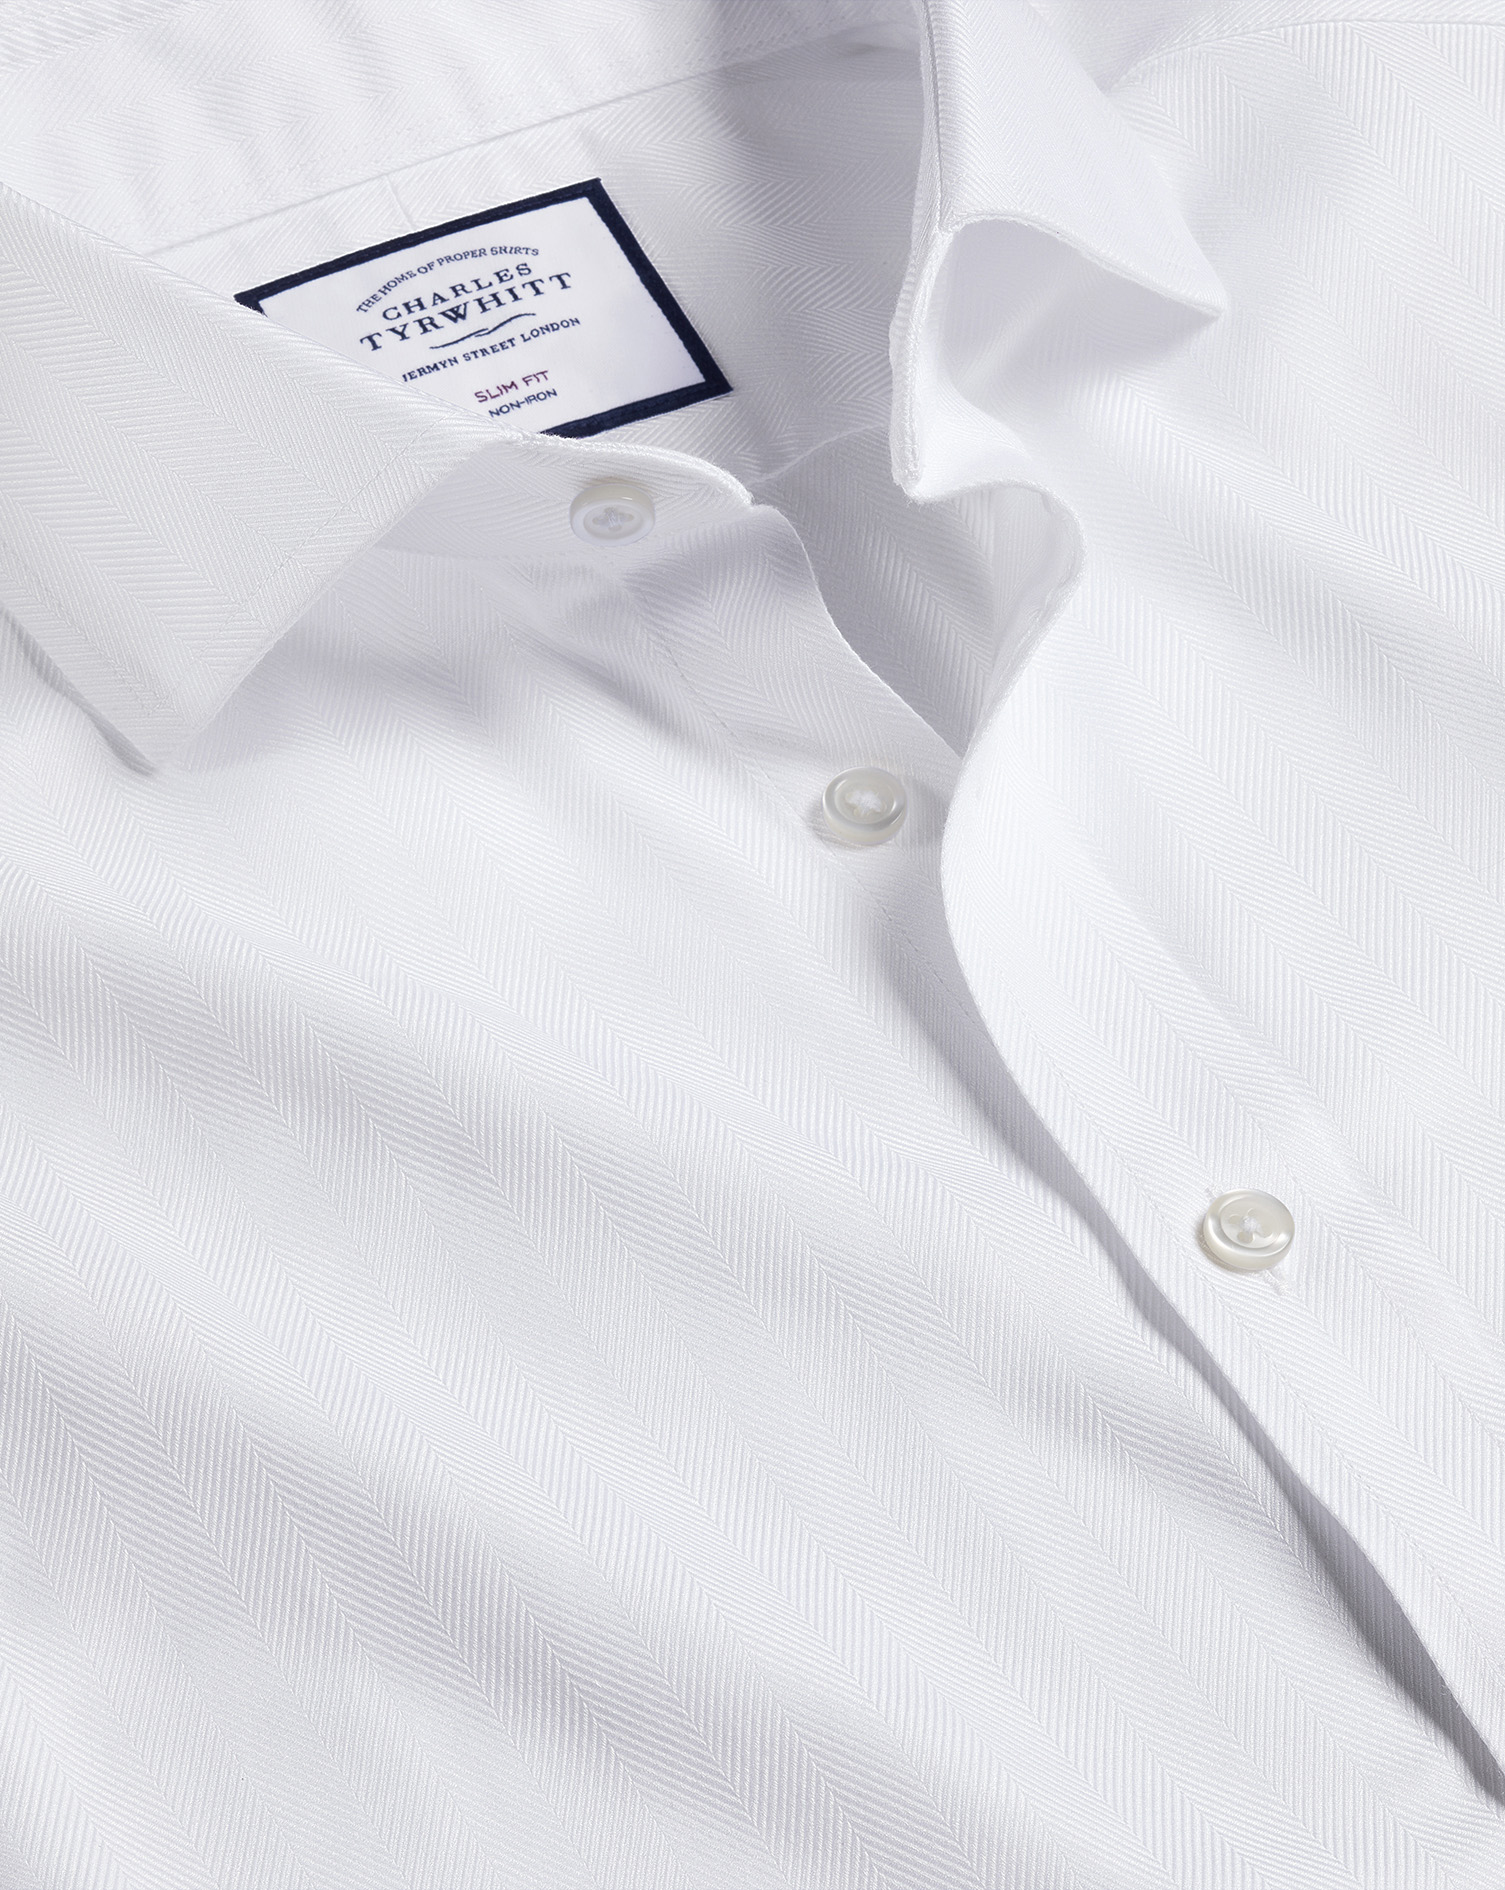 Men's Charles Tyrwhitt Cutaway Collar Non-Iron Herringbone Dress Shirt - White French Cuff Size Smal